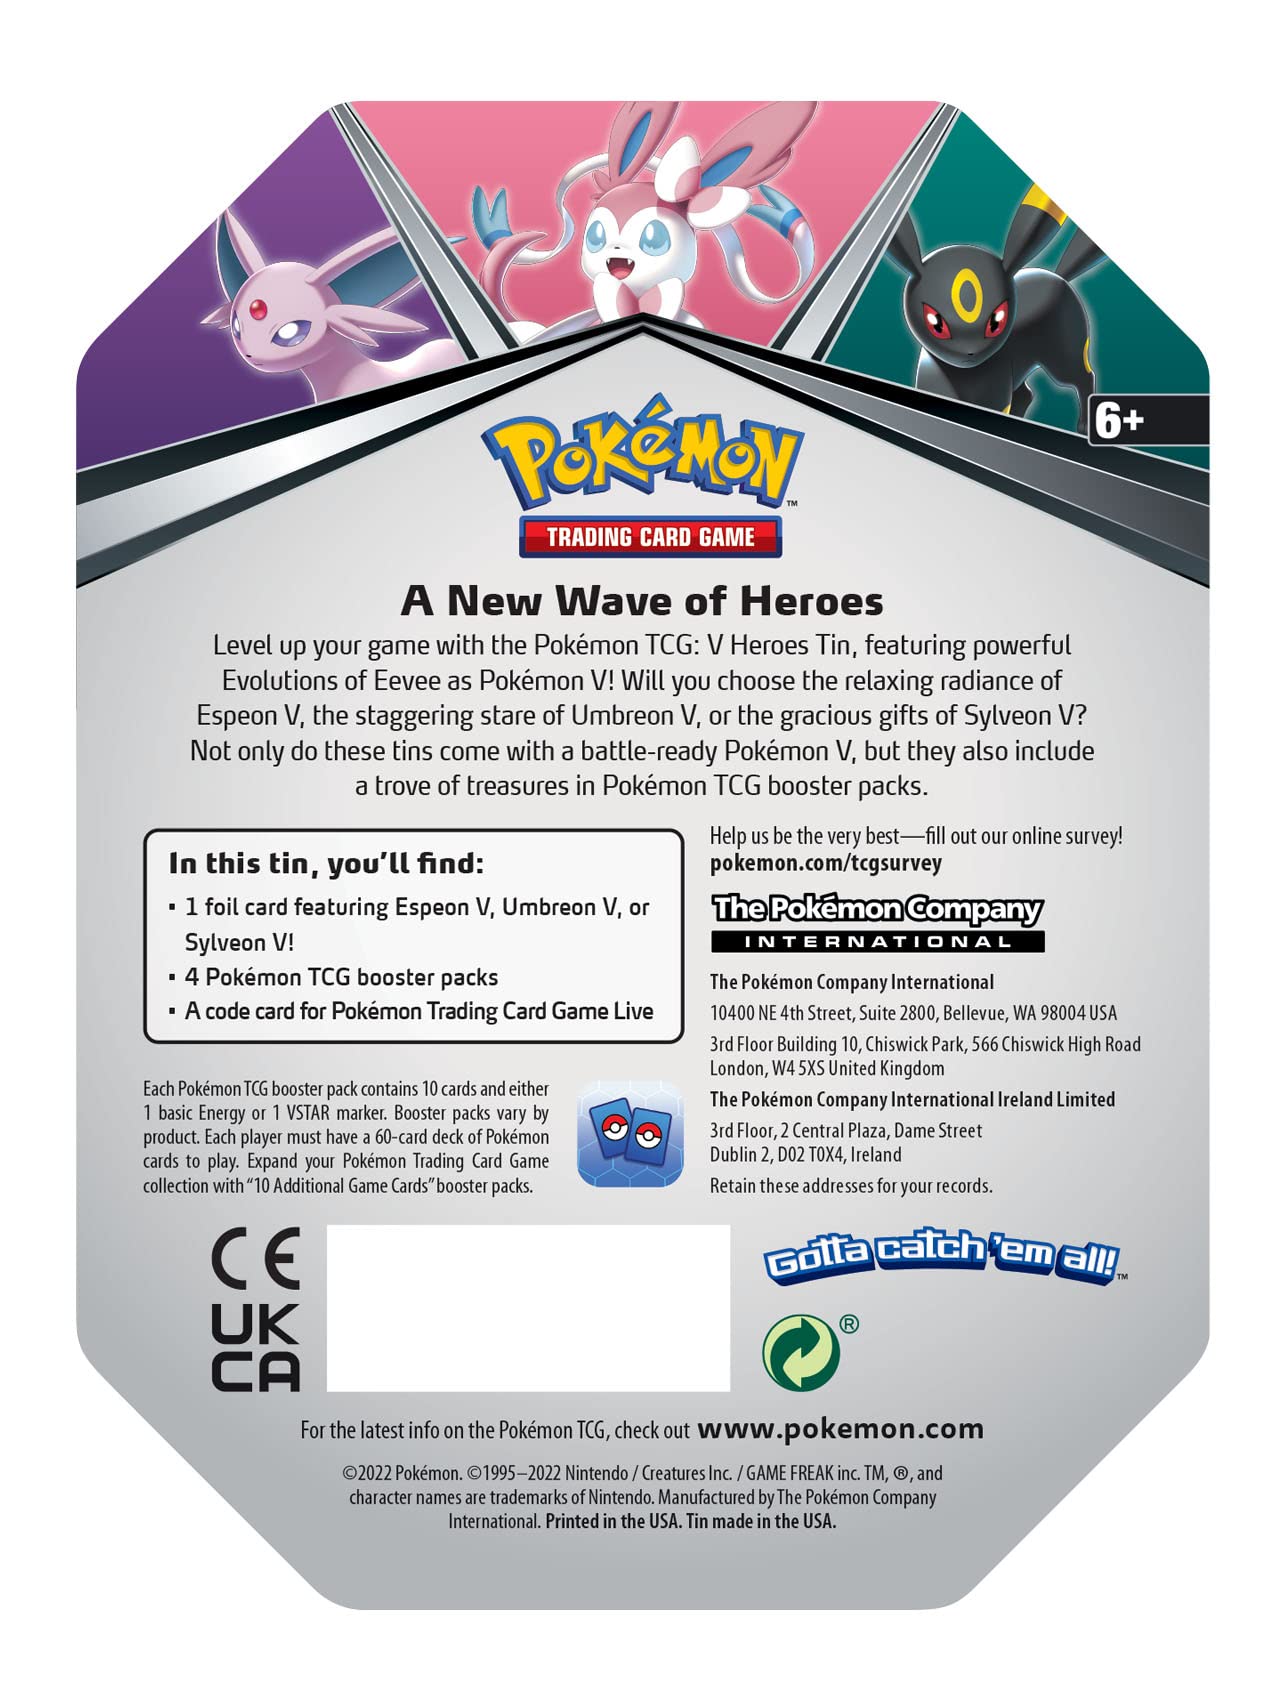 Pokemon TCG: V Heroes Tin Espeon (1 Foil Card & 4 Booster Packs)